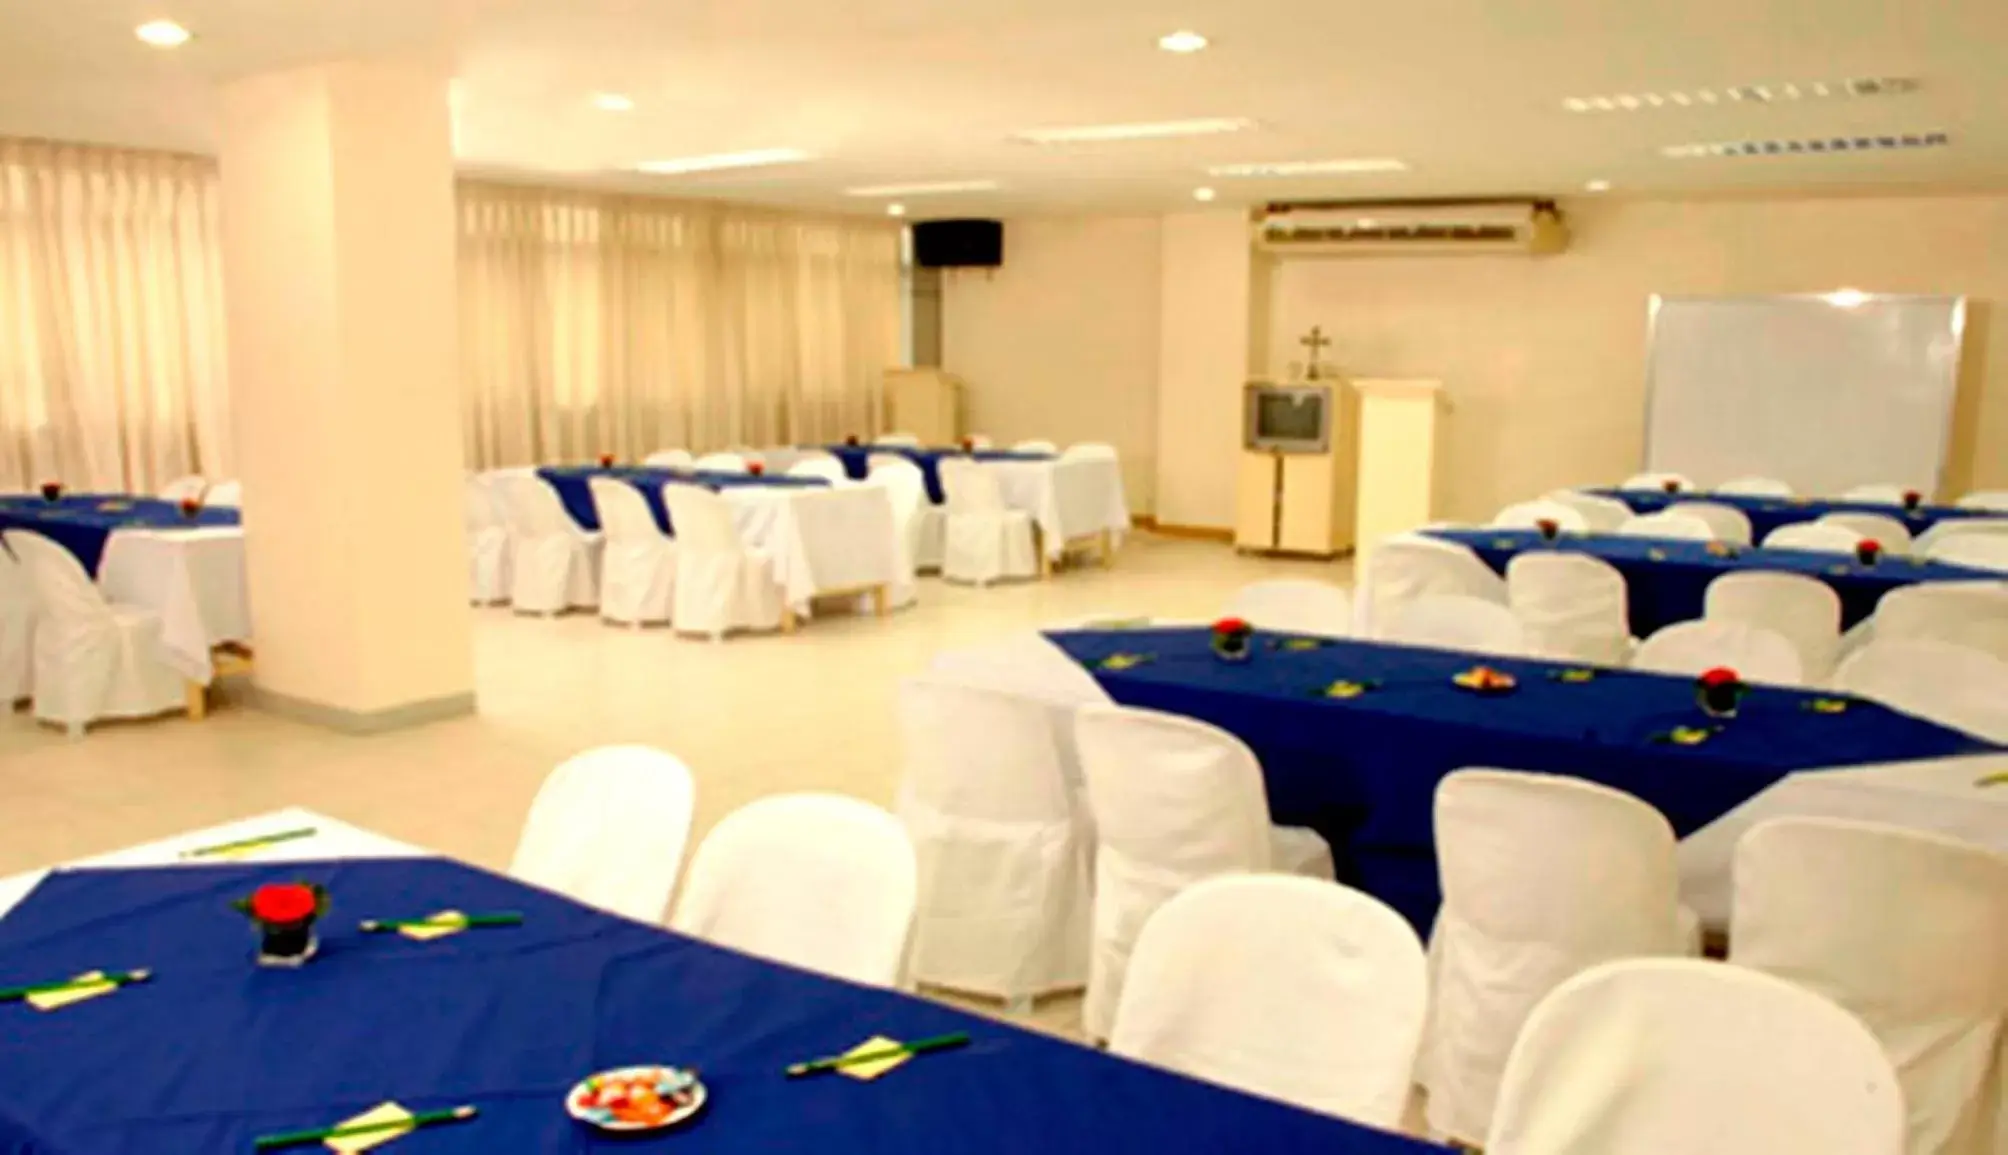 Banquet/Function facilities, Banquet Facilities in Hotel Pier Cuatro